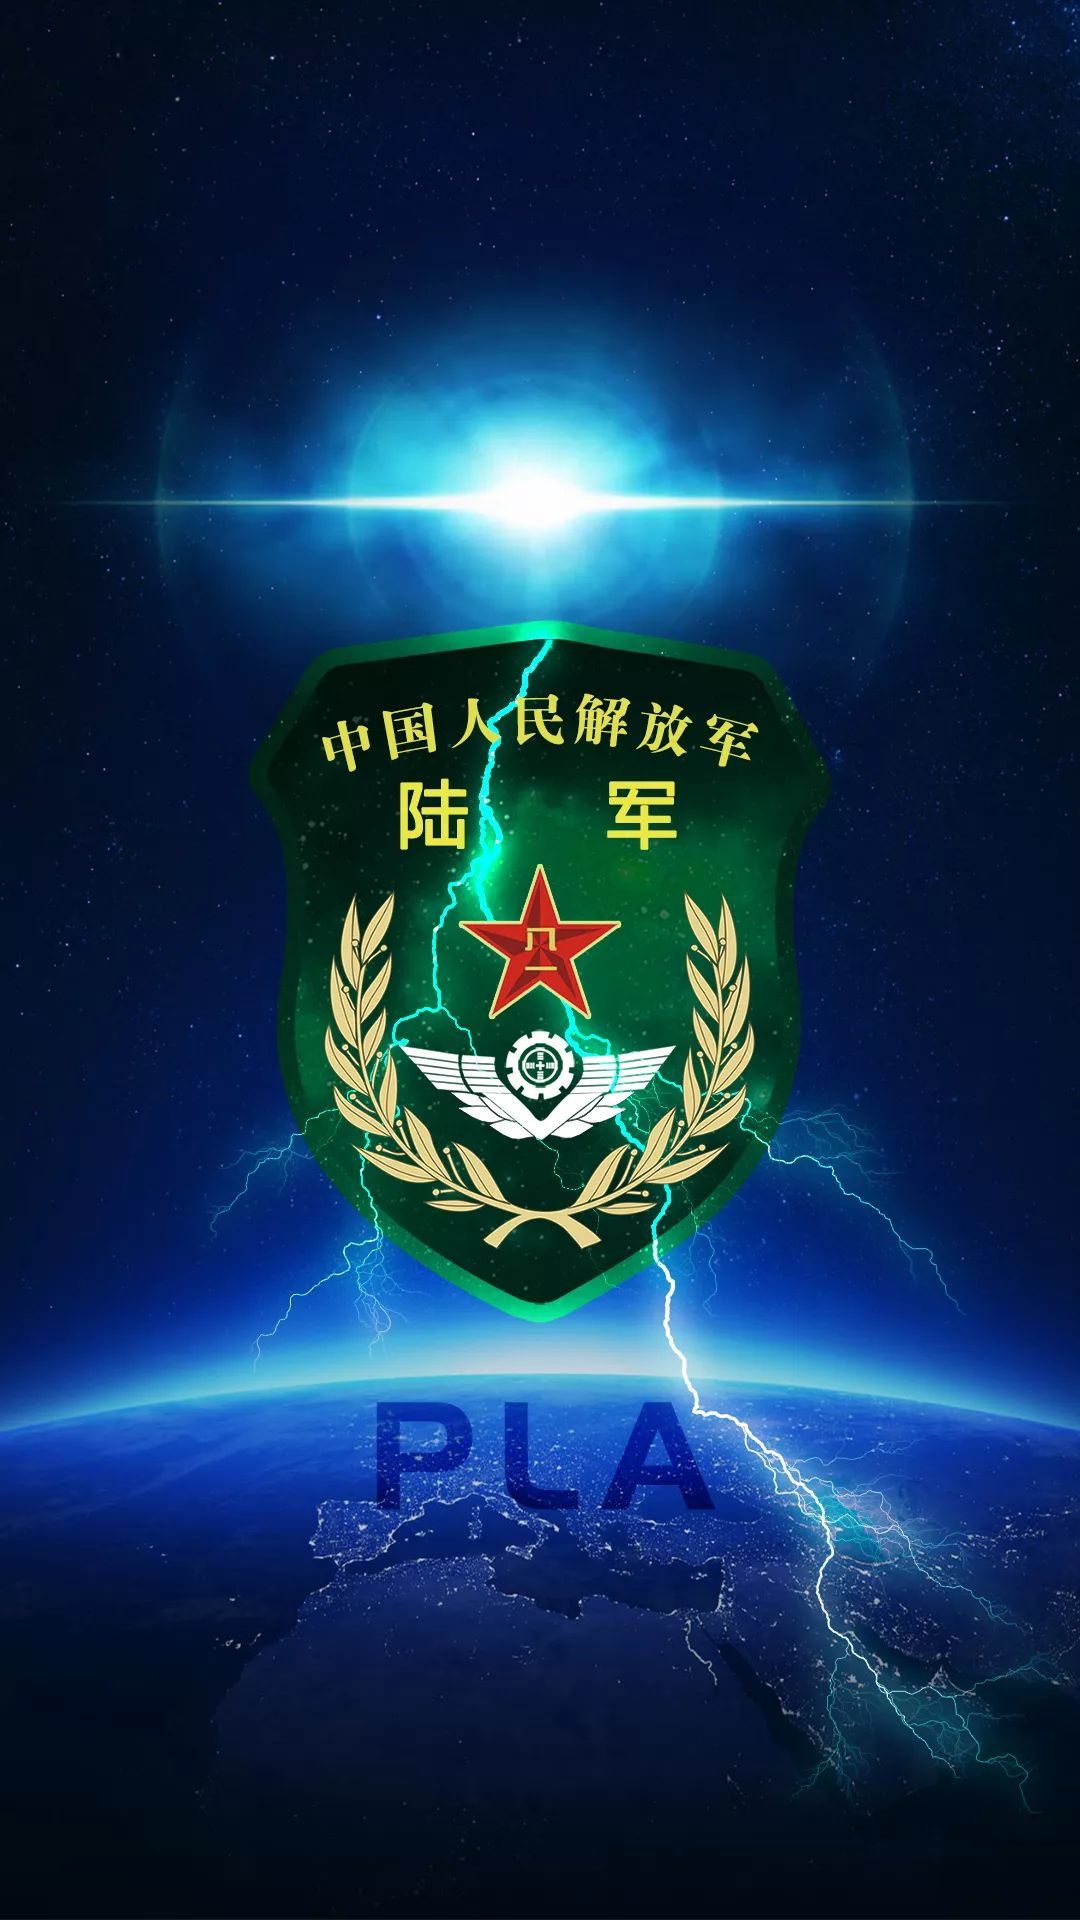 中国人民解放军战略支援部队徽章手机壁纸 - 25H.NET壁纸库